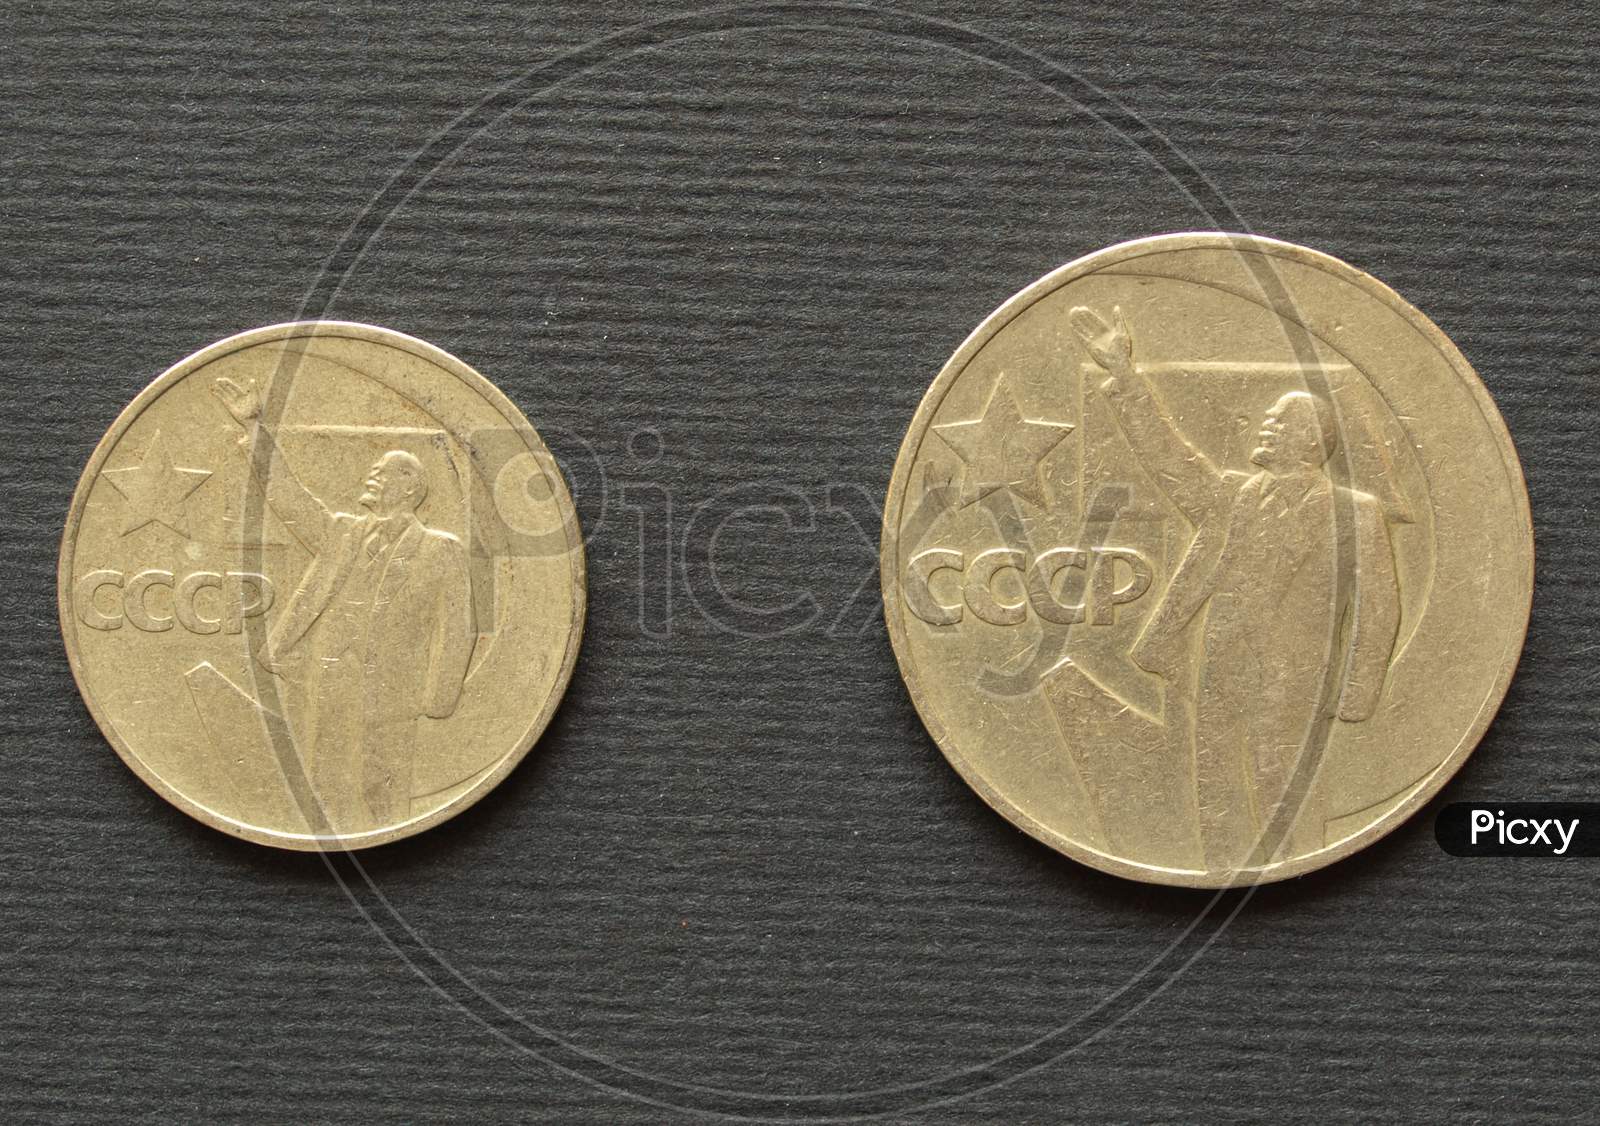 Ancient Cccp Coin